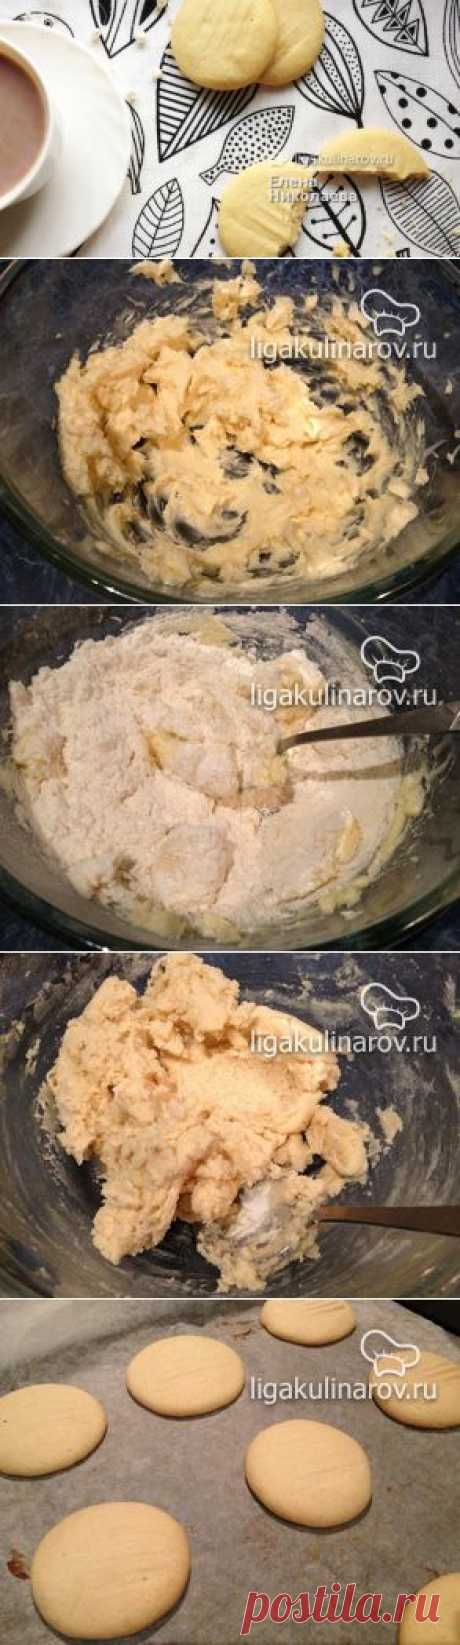 Печенье на сгущенном молоке – рецепт с фото от Лиги Кулинаров, пошаговый рецепт